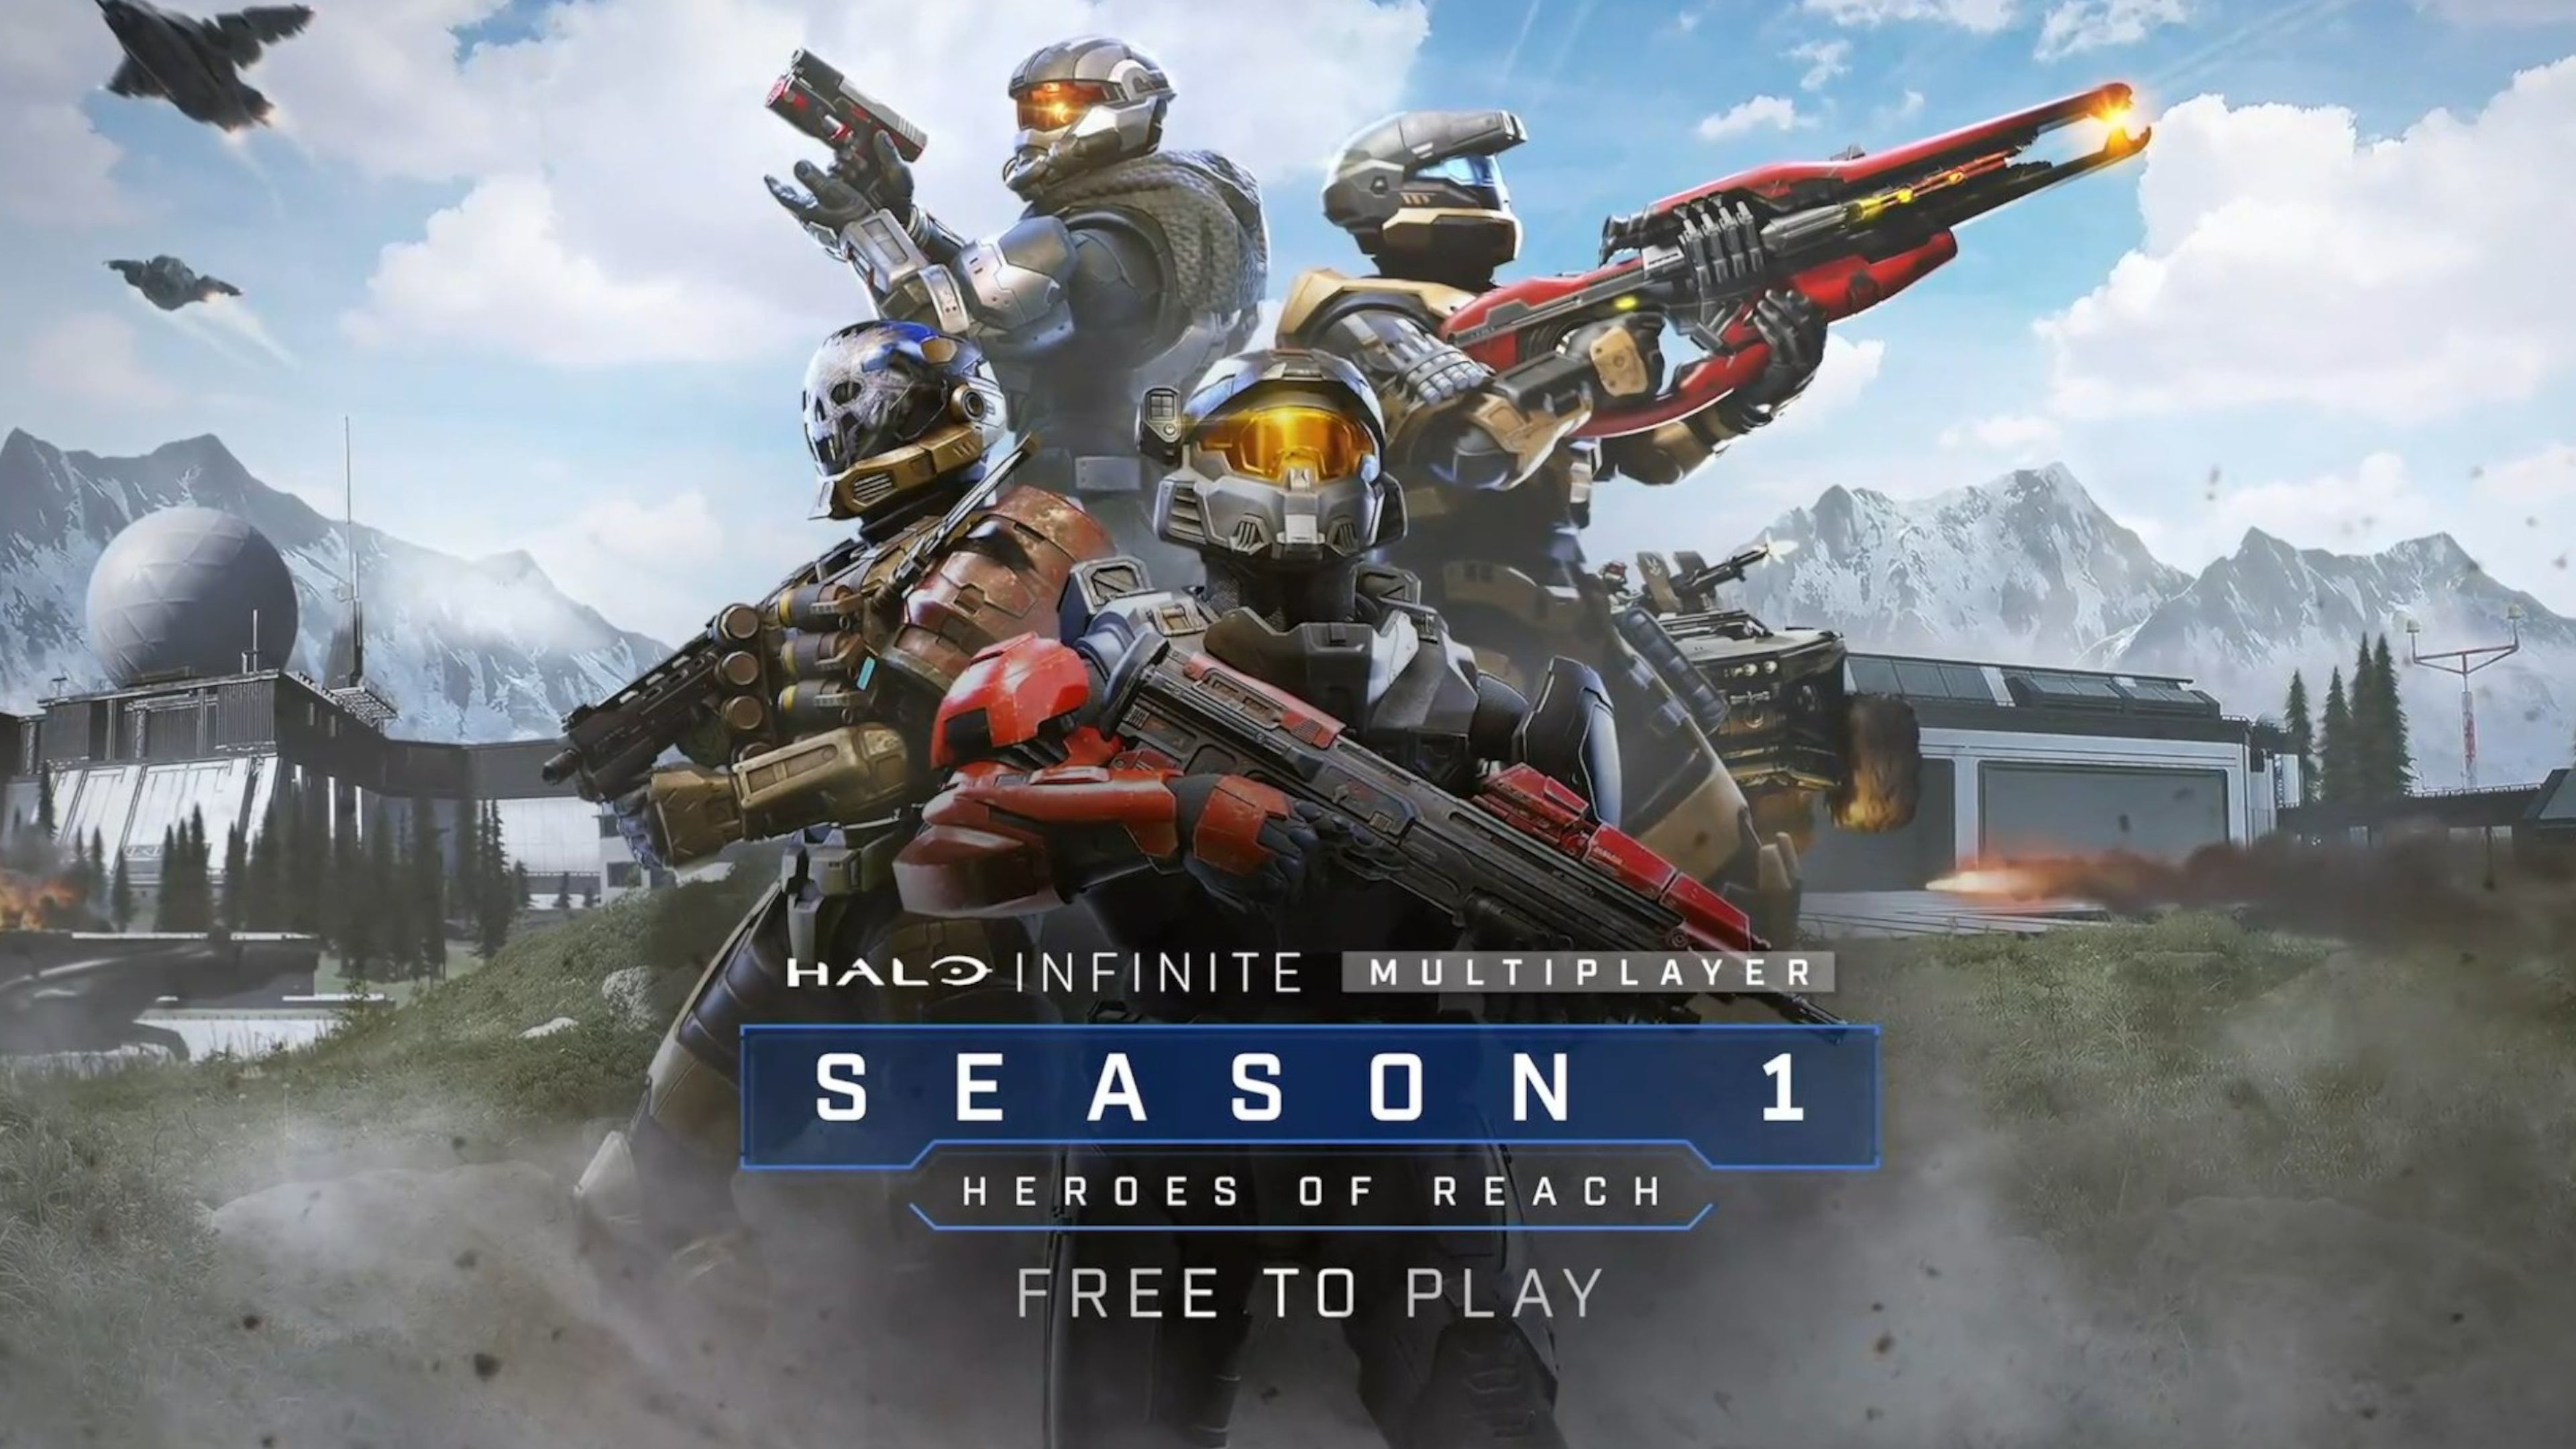 Halo Infinite season 1